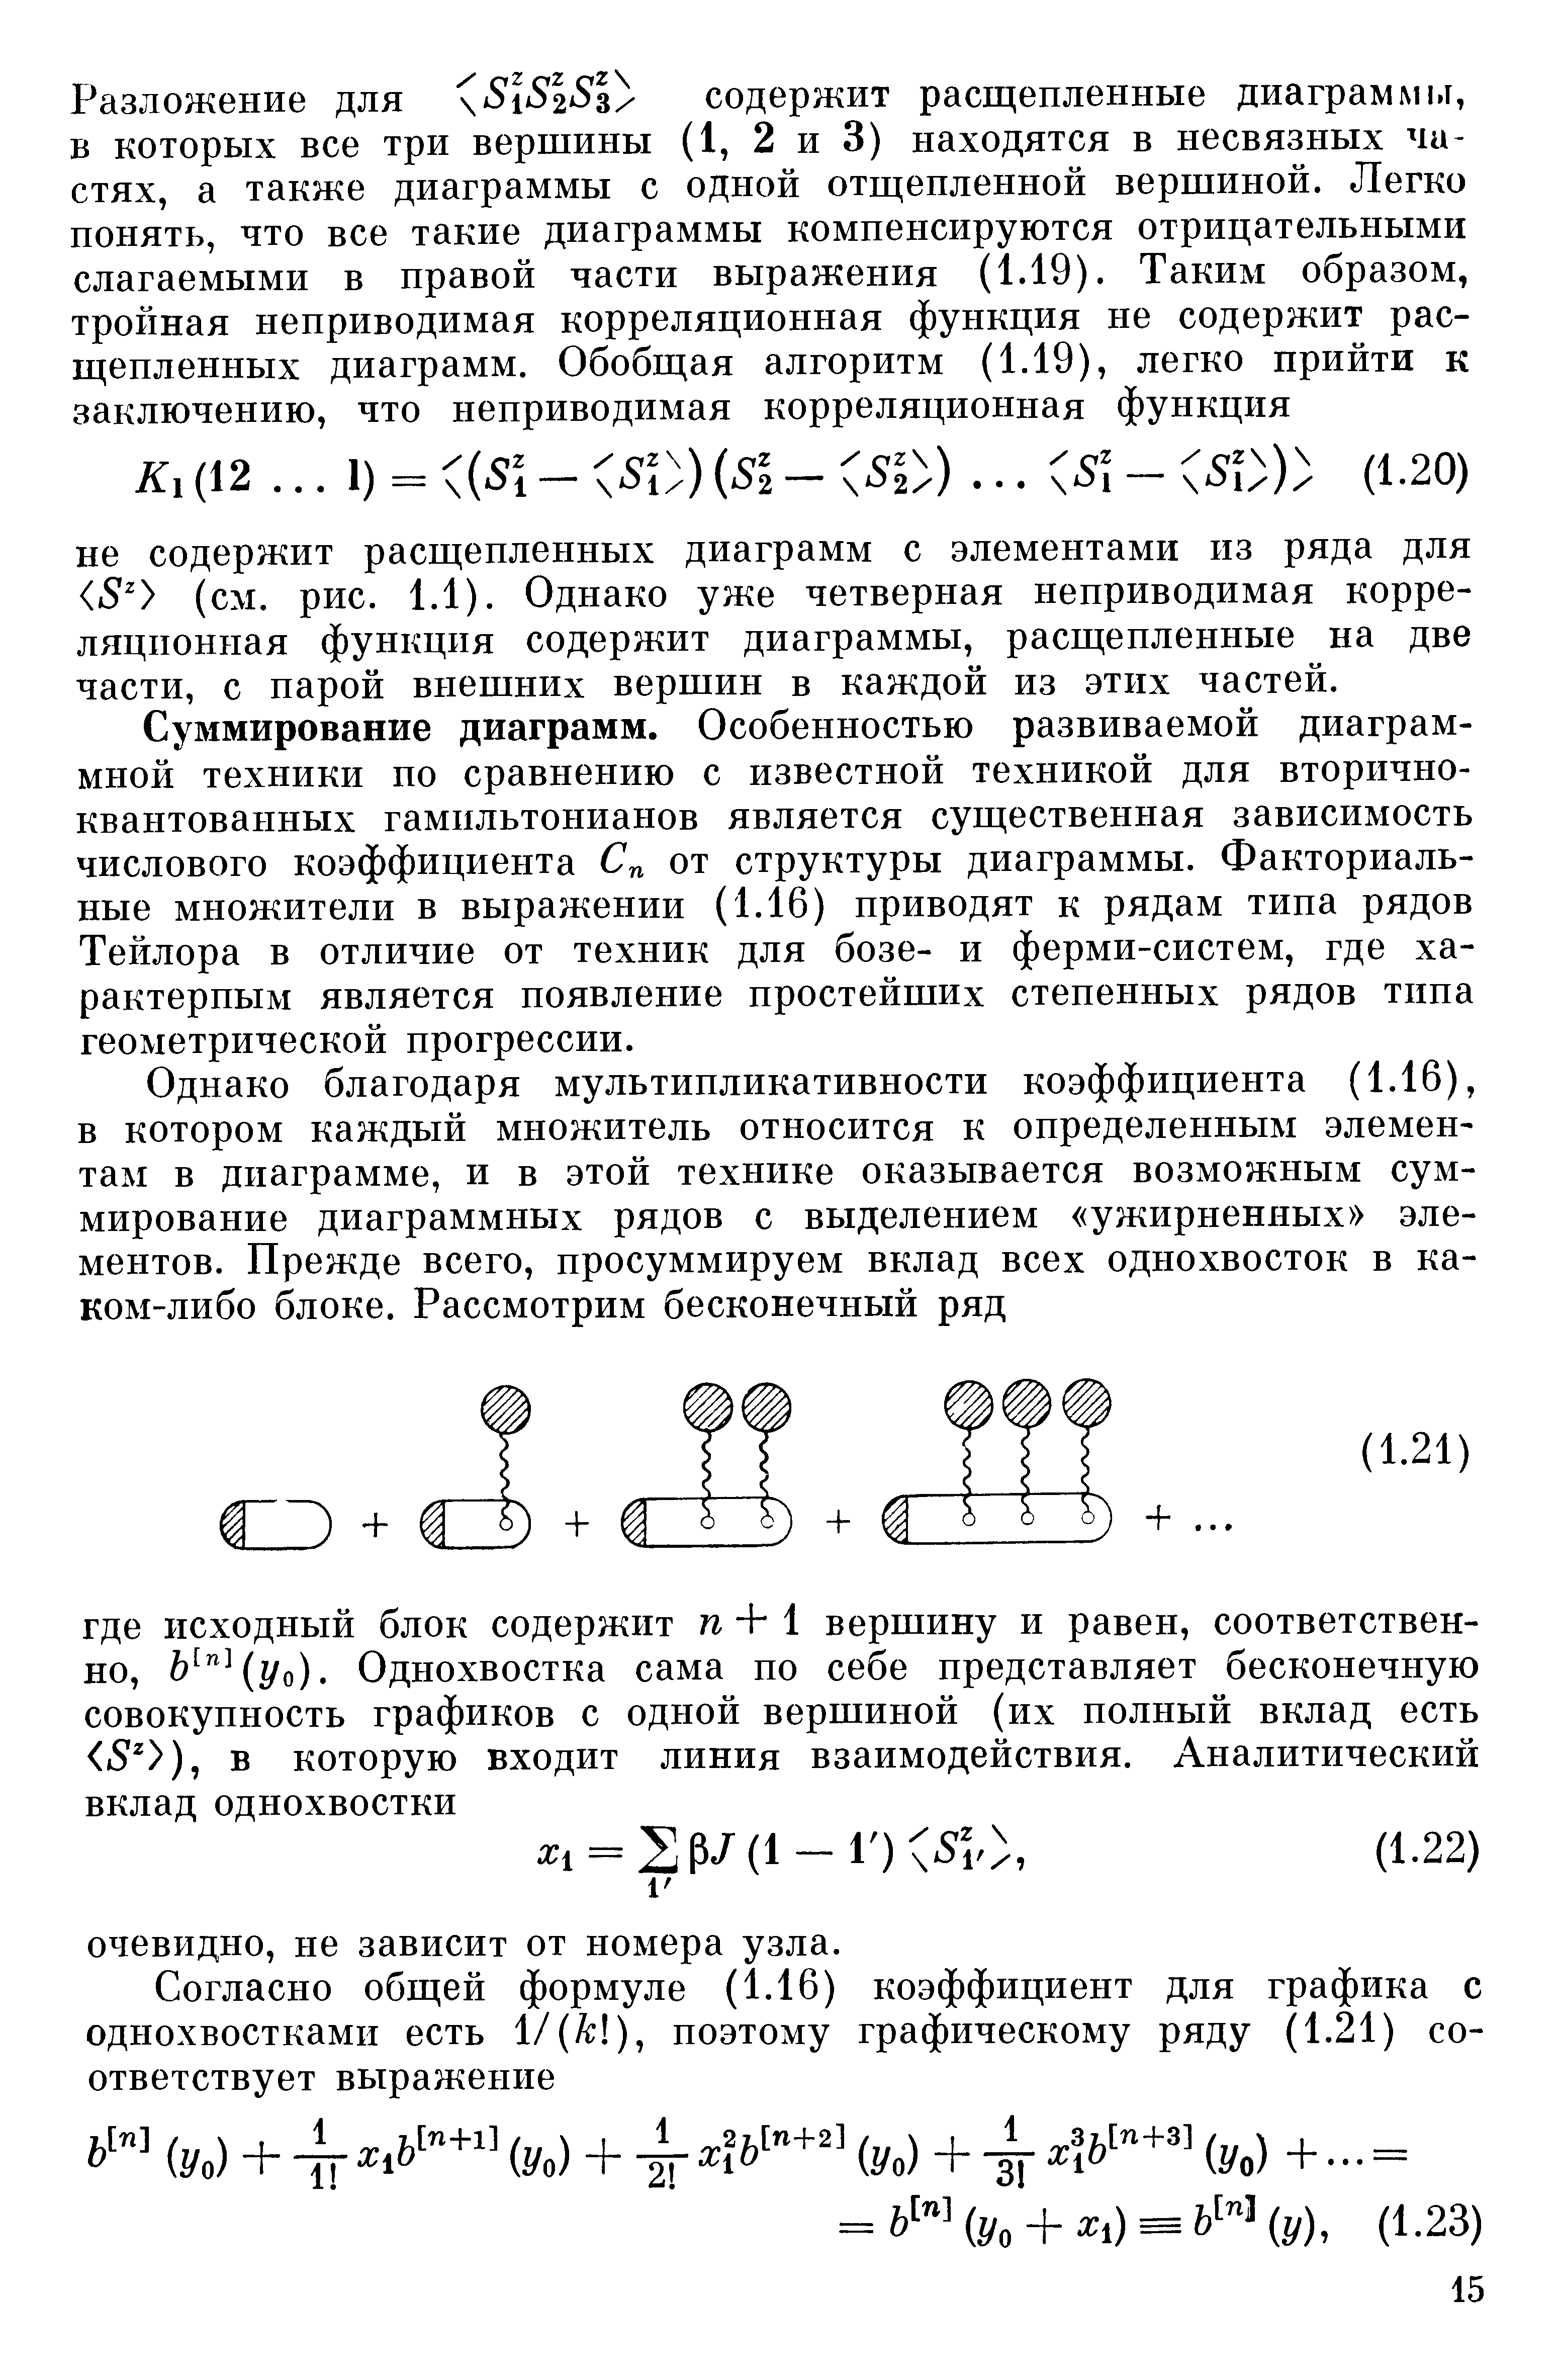 Суммирование диаграмм. Особенностью развиваемой диаграммной техники по сравнению с известной техникой для вторичноквантованных гамильтонианов является существенная зависимость числового коэффициента Сп от структуры диаграммы. Факториальные множители в выражении (1.16) приводят к рядам типа рядов Тейлора в отличие от техник для бозе- и ферми-систем, где характерным является появление простейших степенных рядов типа геометрической прогрессии.
